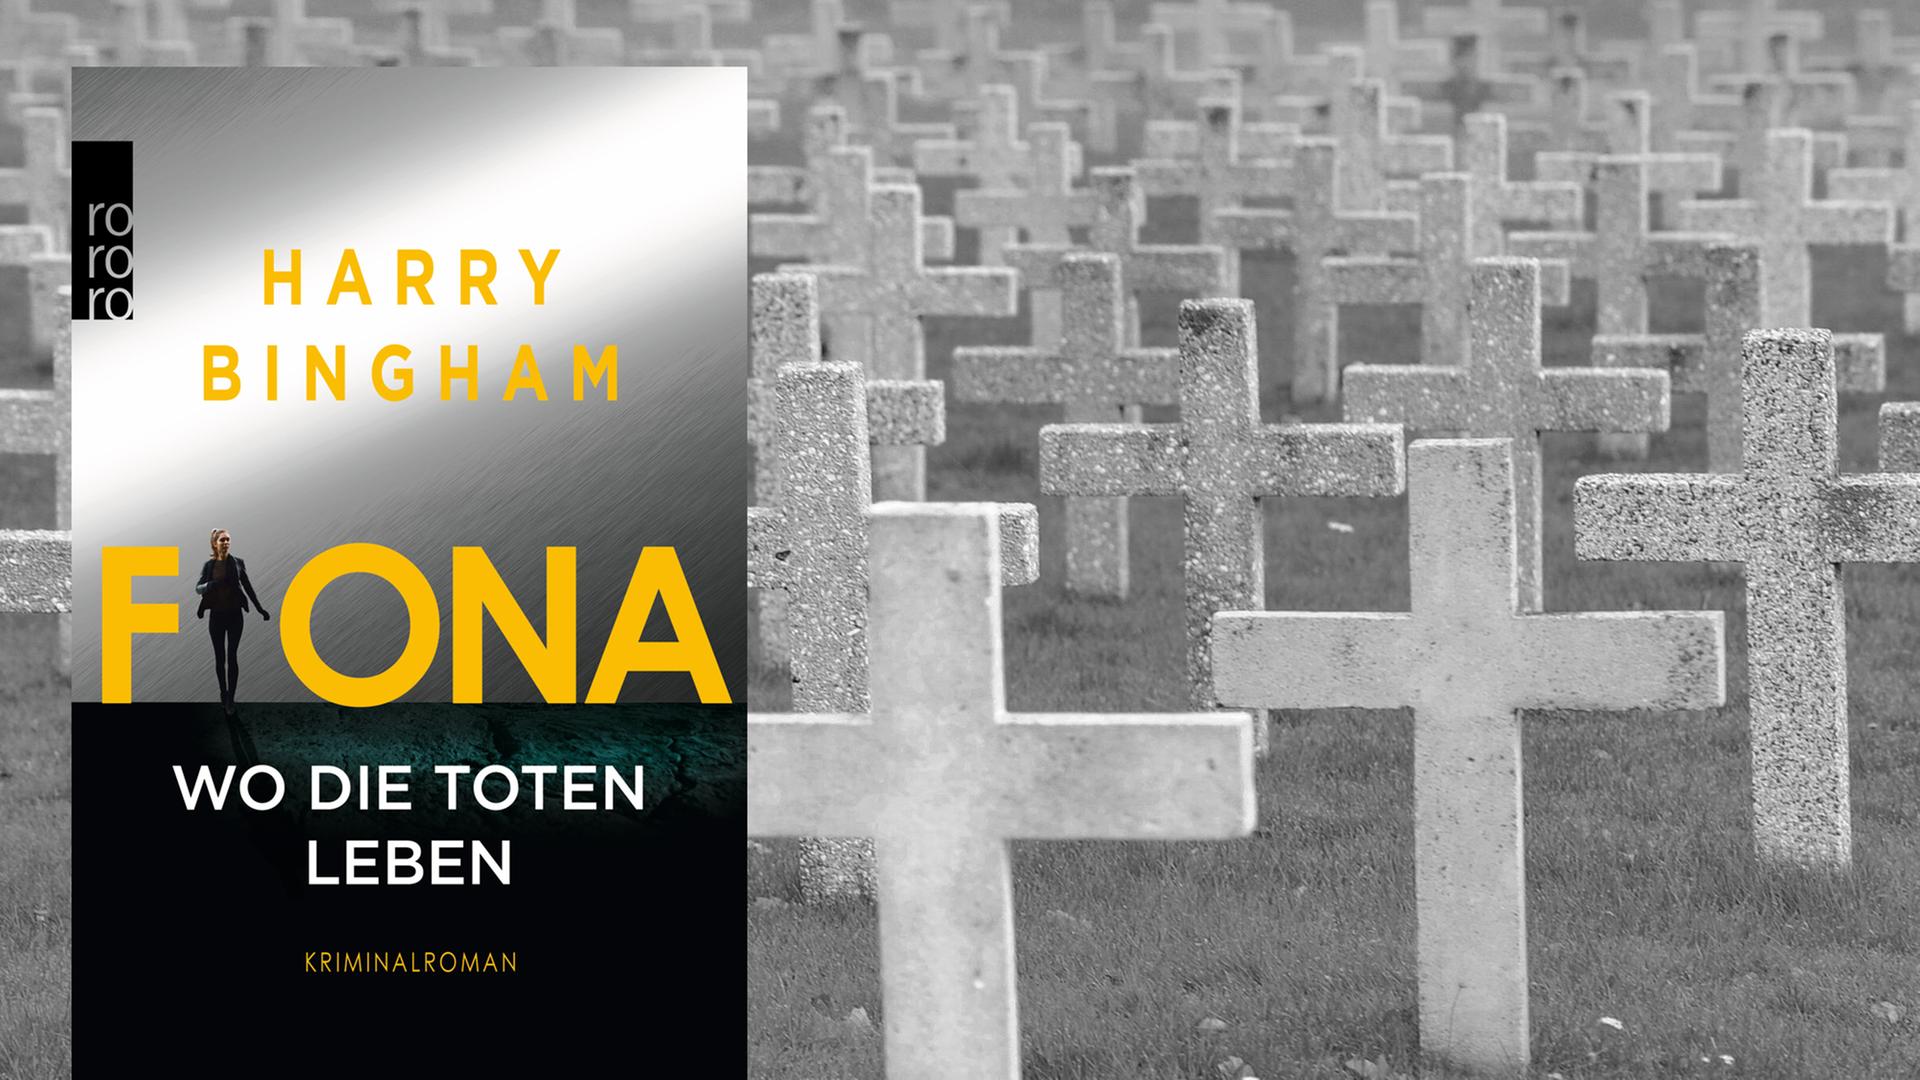 Cover: "Harry Bingham: "Fiona - Wo die Toten leben"